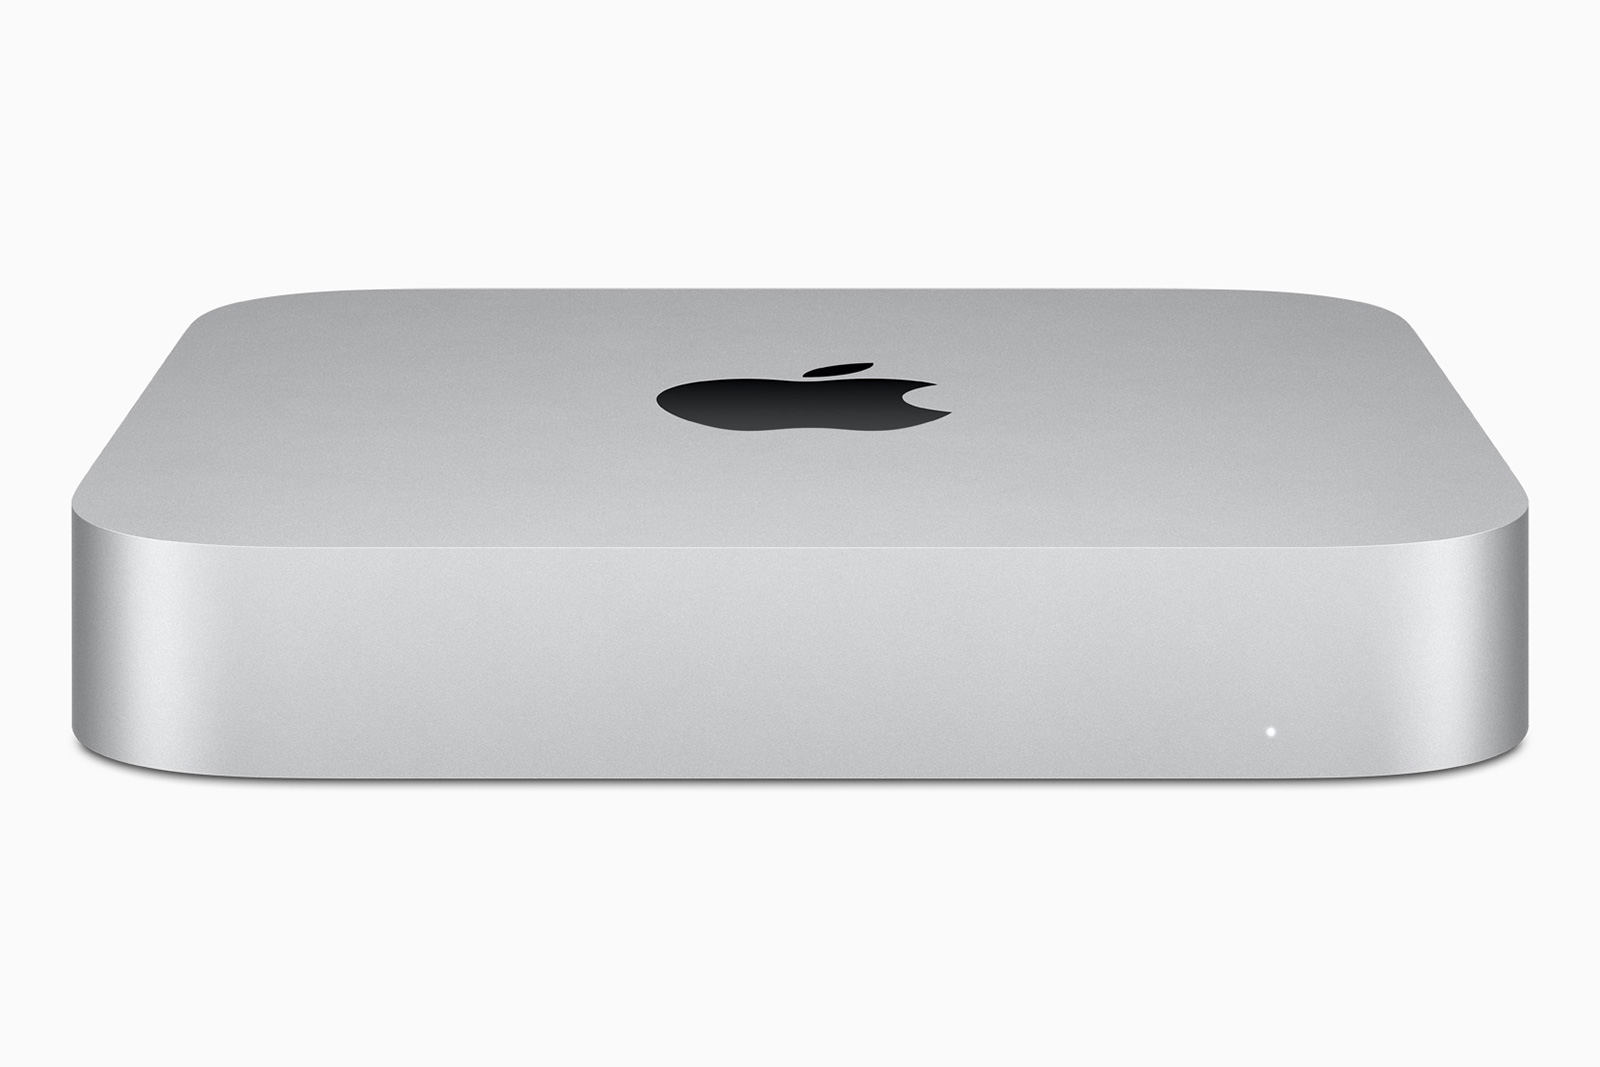 Apple’s 512GB Mac Mini M1 returns to a list-low $800 at Amazon